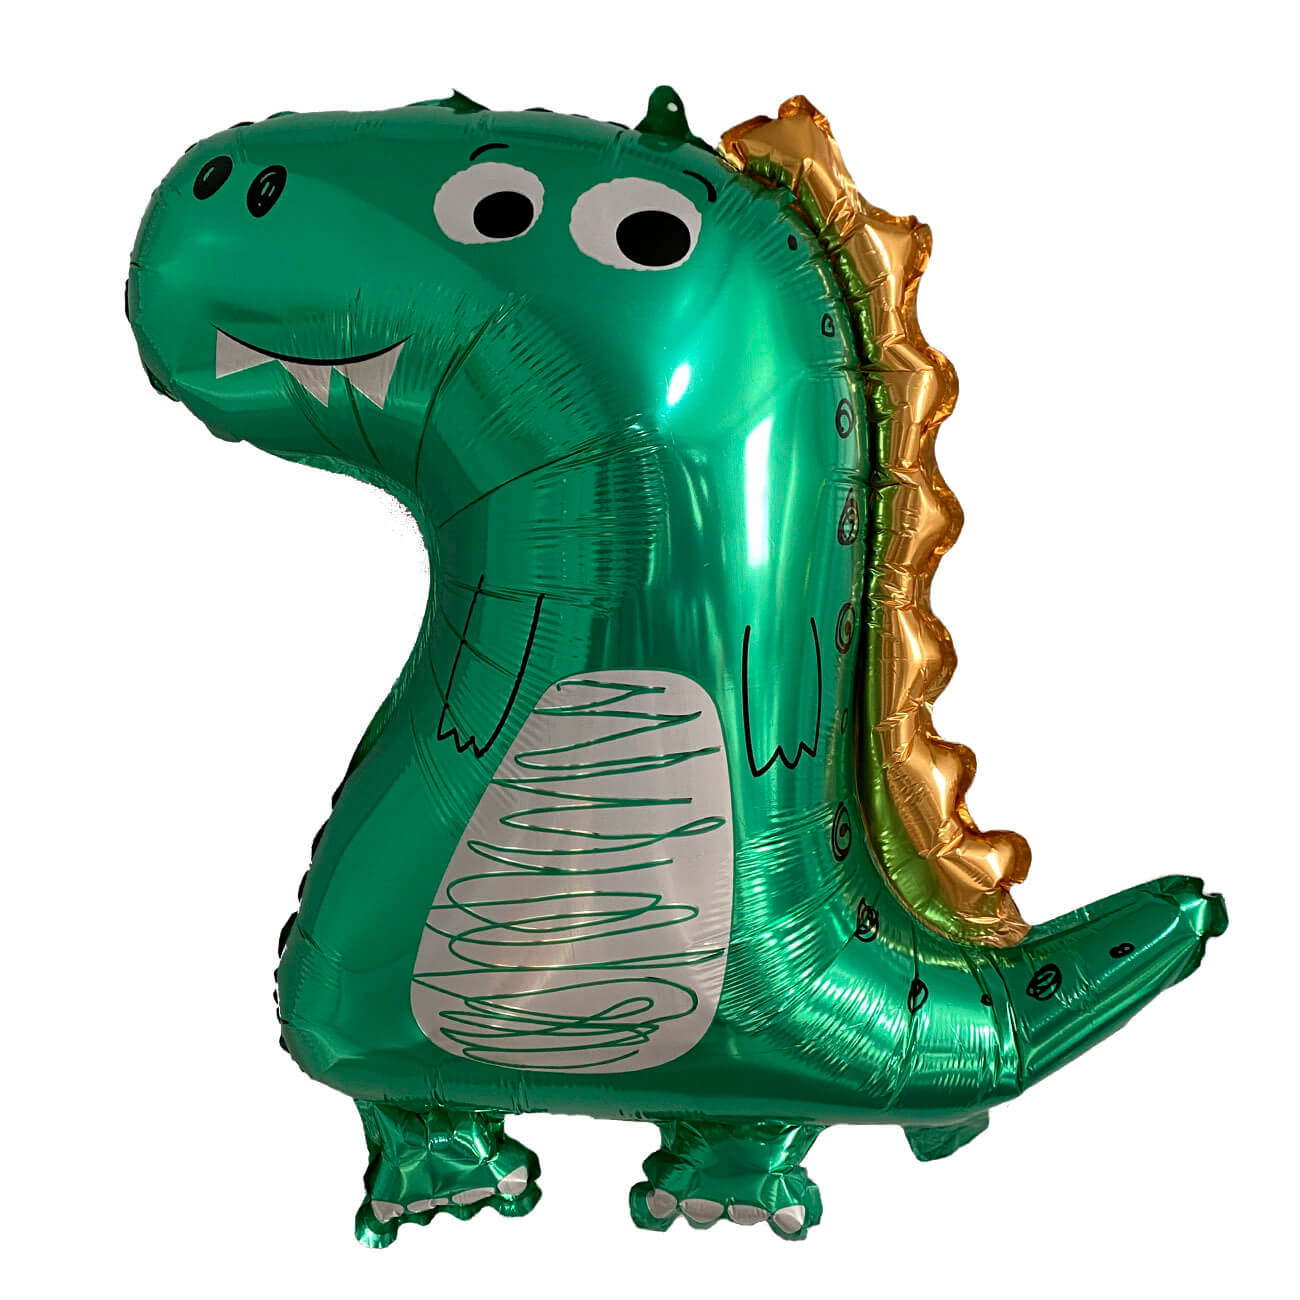 Шар воздушный, 70х59 см, фольга, зеленый, Динозавр, Dino шар воздушный 70х59 см фольга зеленый динозавр dino